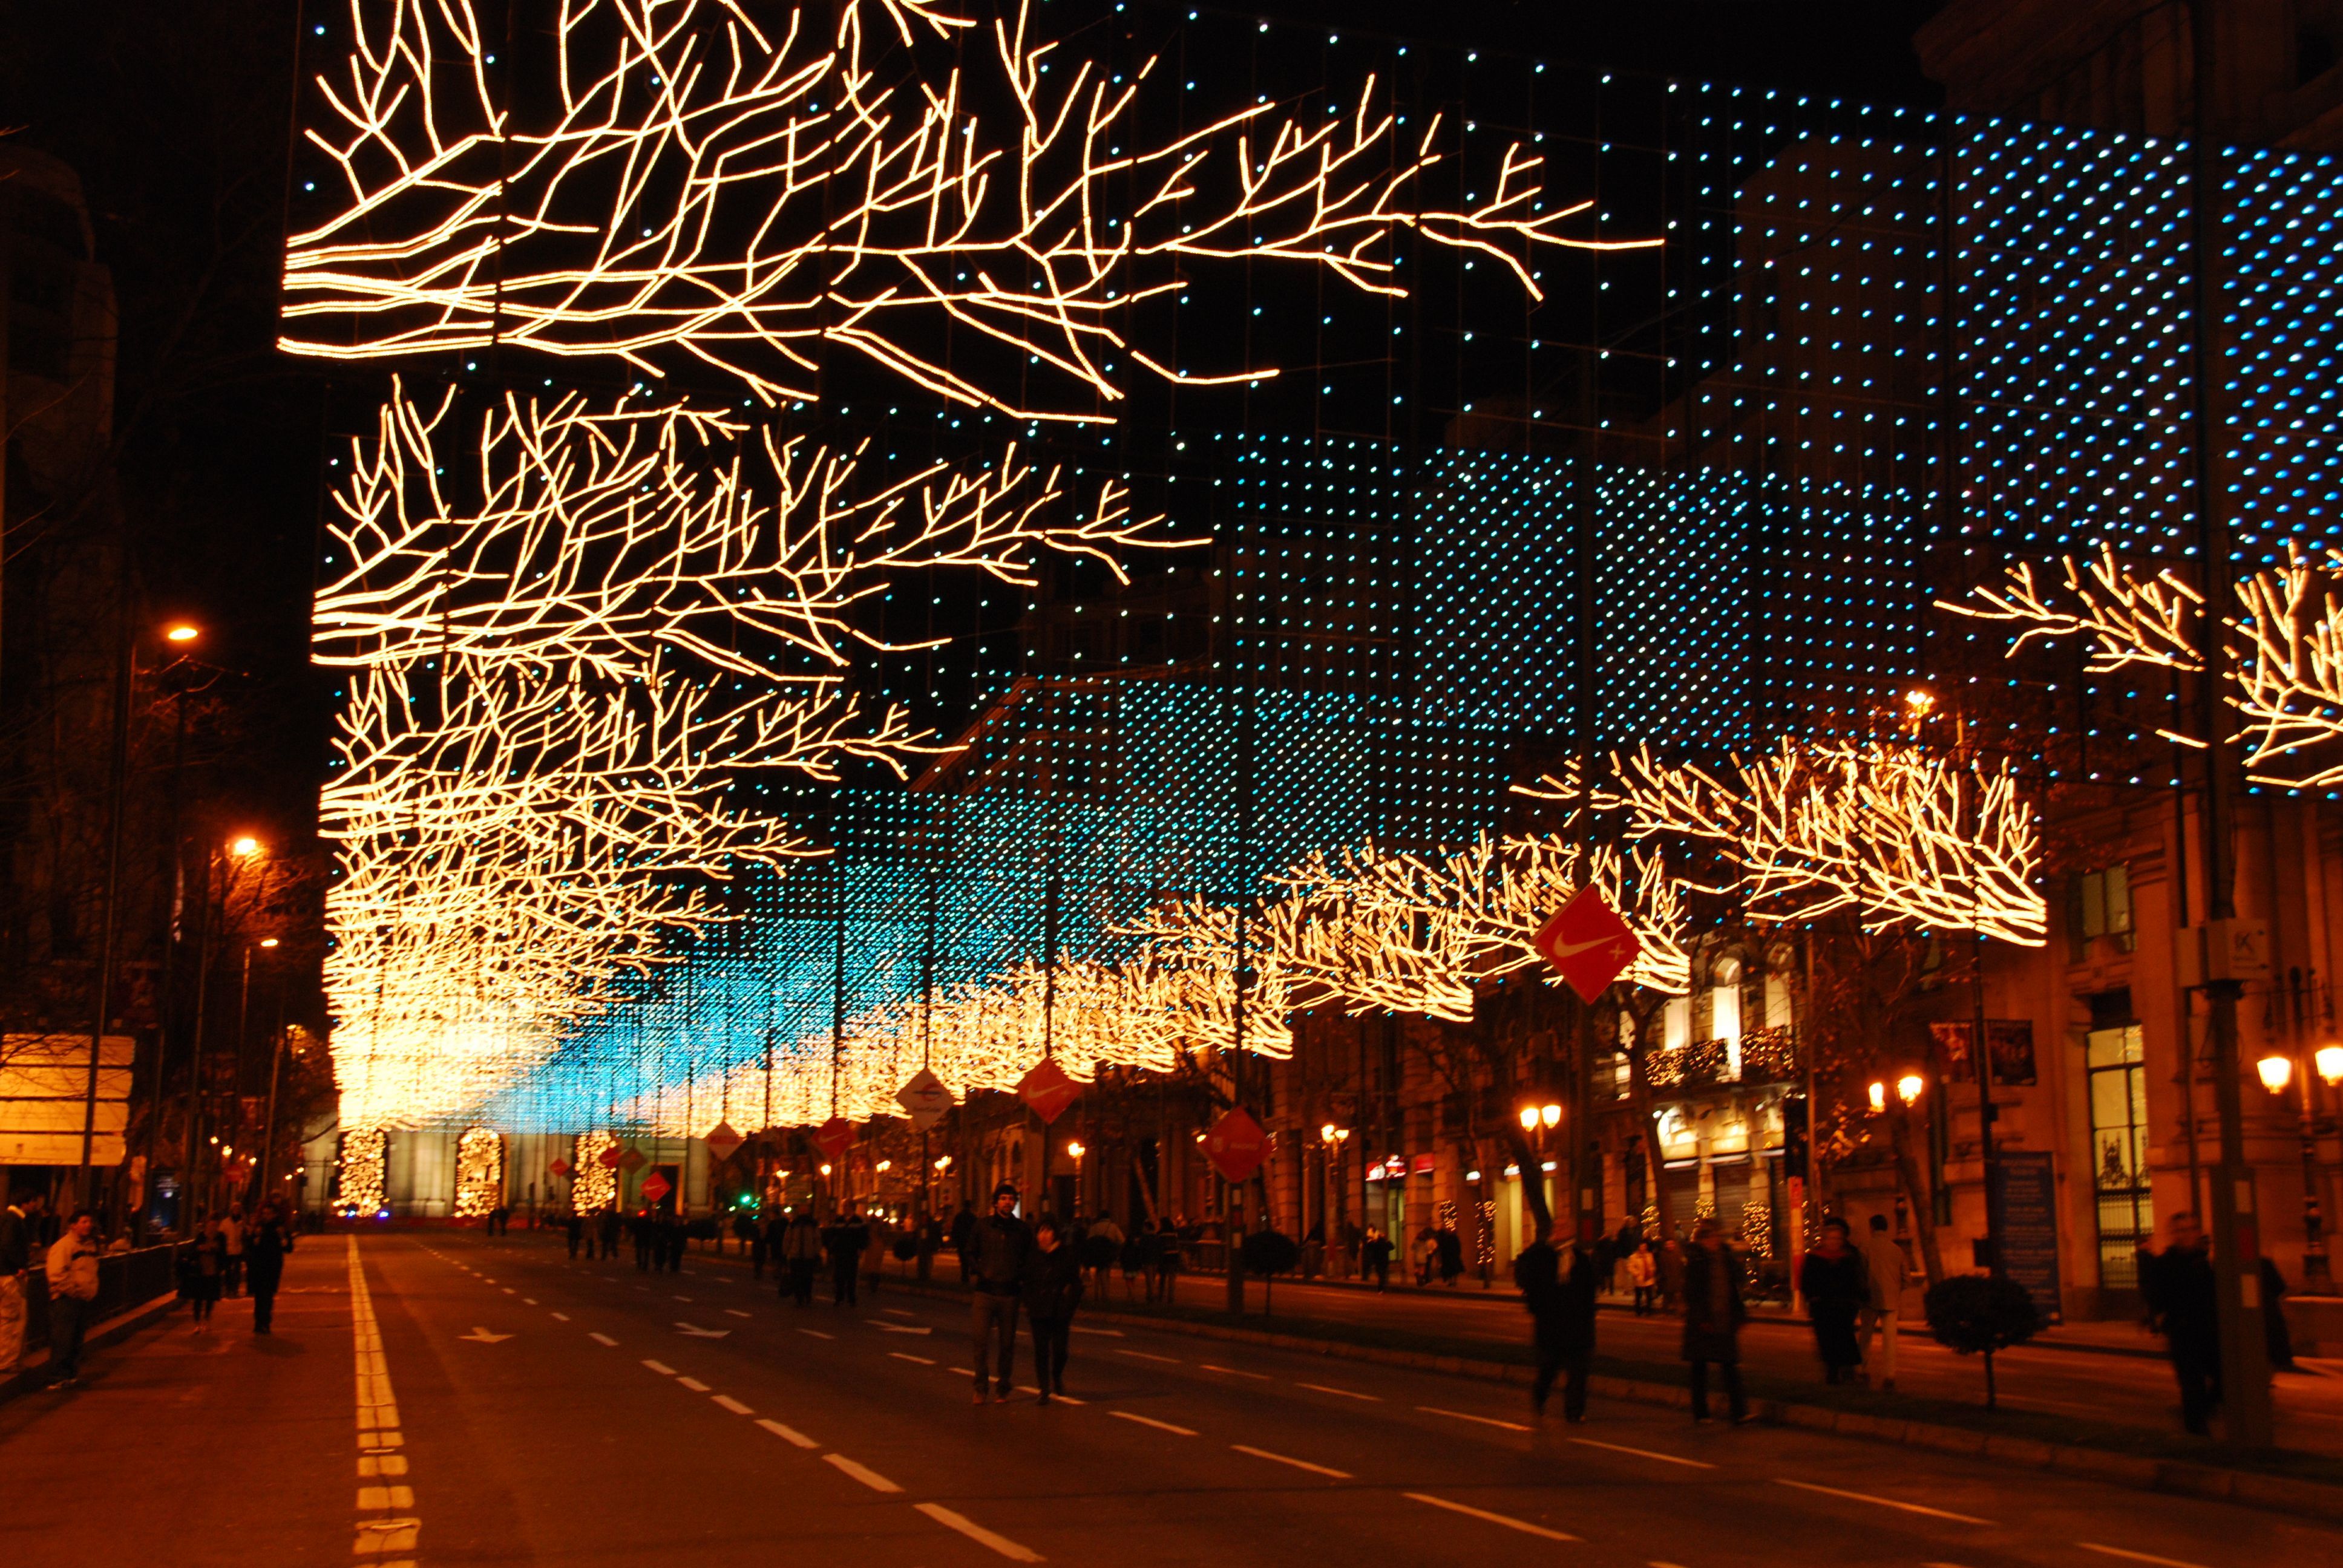 4 миллиона евро потратили на фонарики: в Мадриде готовятся к Рождеству, несмотря на карантин